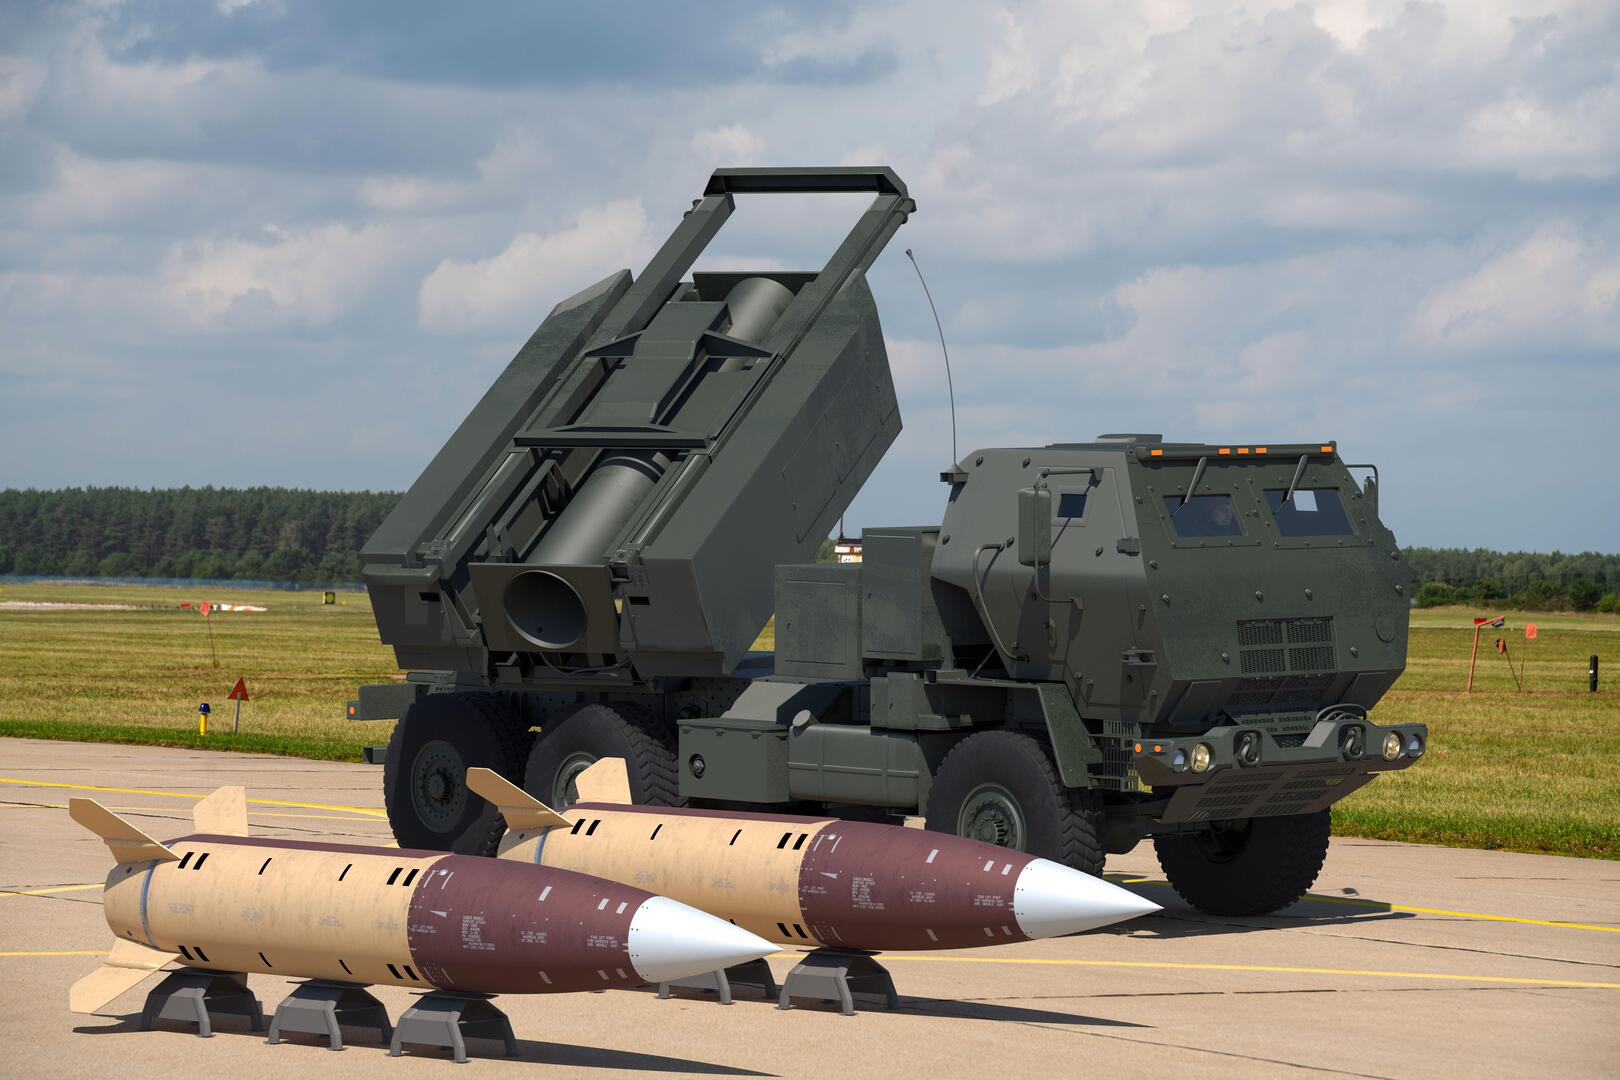 واشنطن تنفي إمكانية إمداد أوكرانيا بصواريخ ATACMS بعيدة المدى